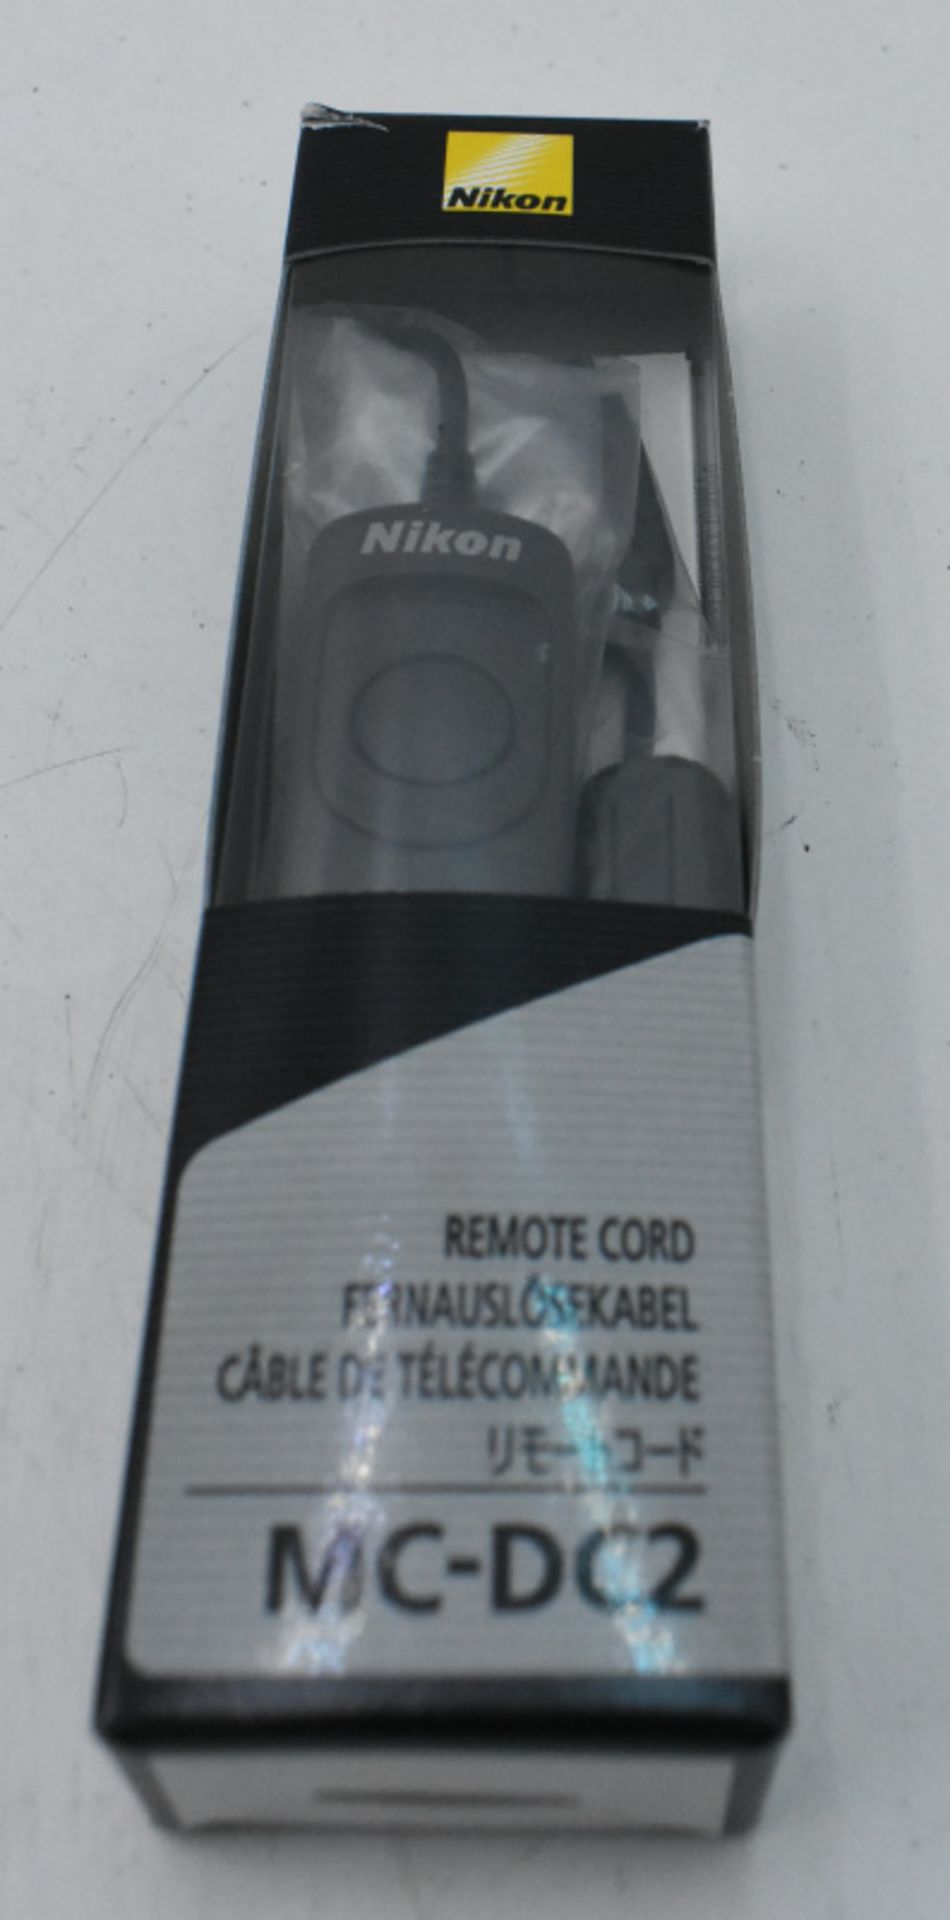 6x Nikon MC-DC2 Camera Remote Cord - Image 2 of 3